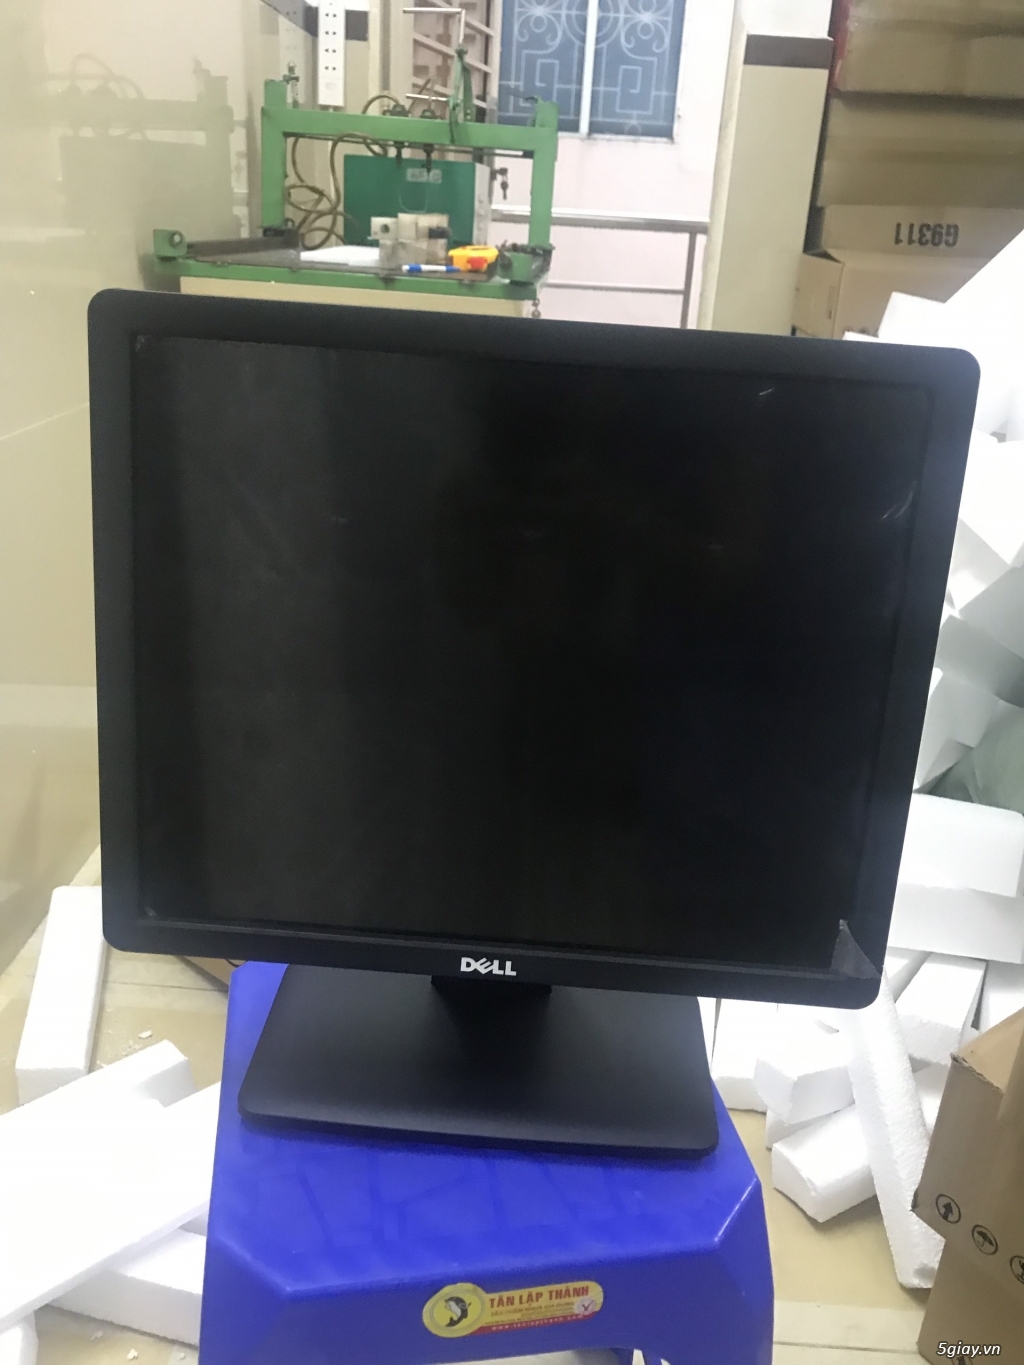 LCD 17 renew full box bảo hành 12 tháng - 3